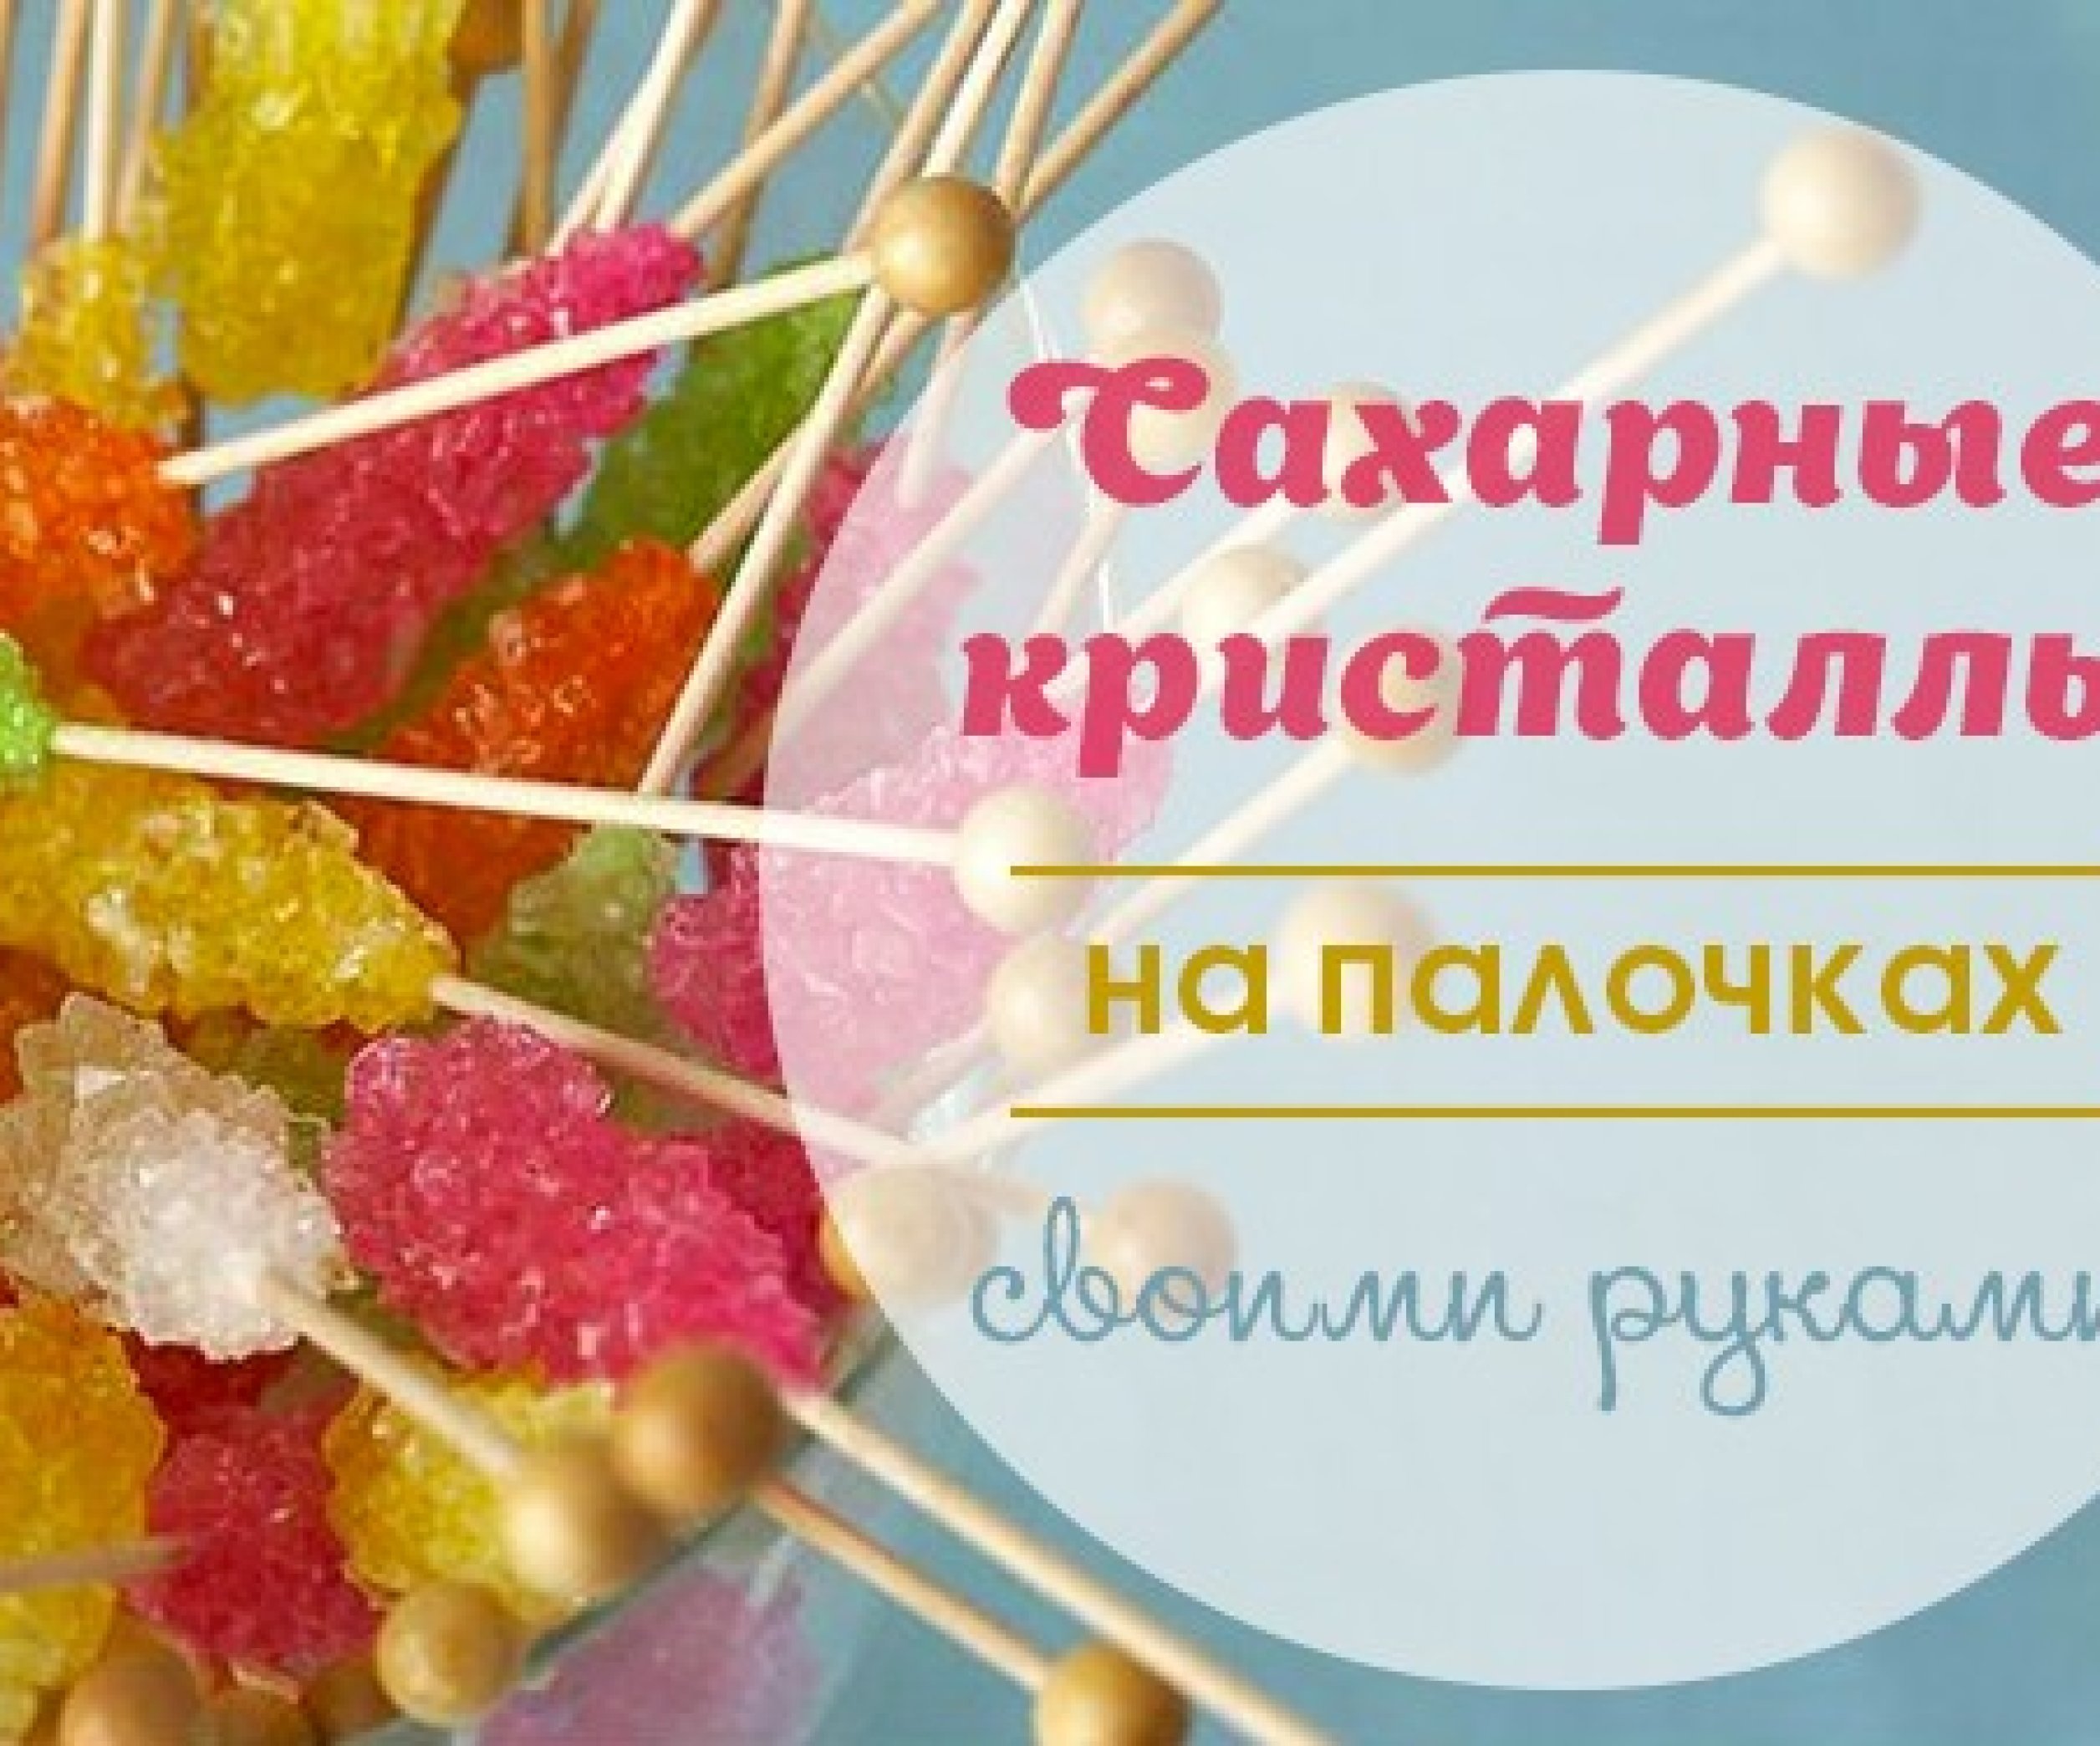 как выращивать кристаллы из соли — 25 рекомендаций на l2luna.ru